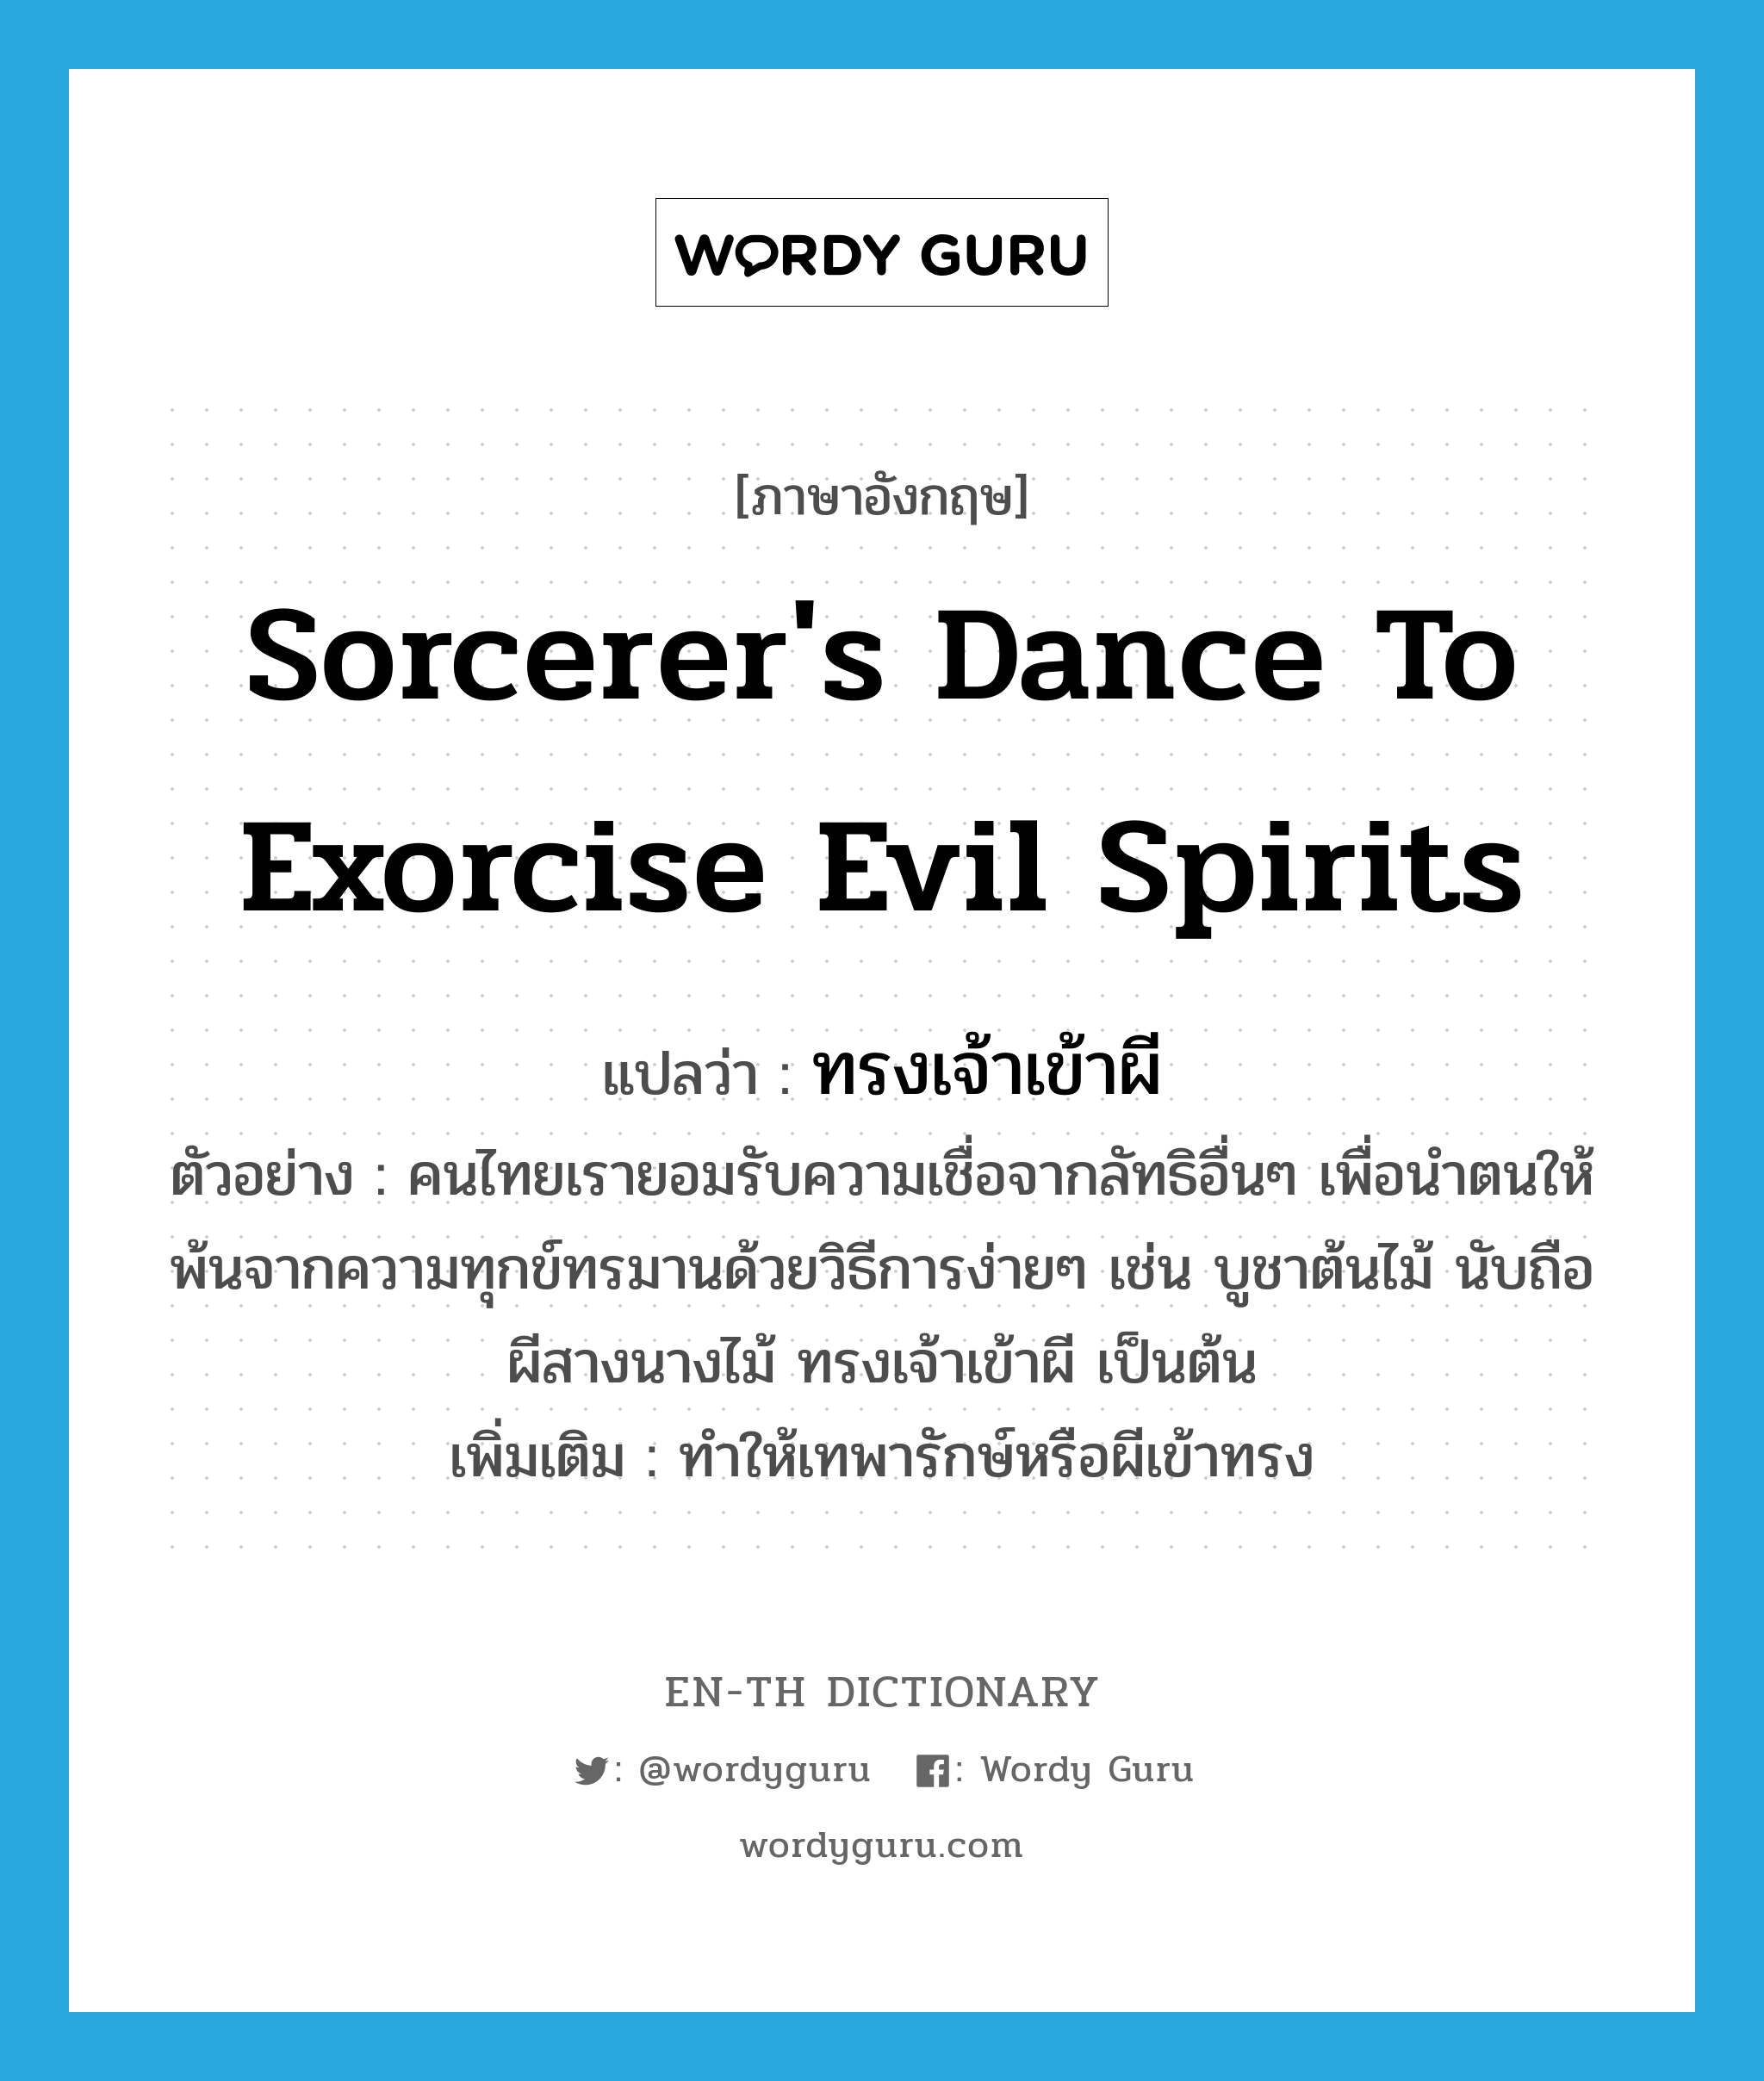 sorcerer's dance to exorcise evil spirits แปลว่า?, คำศัพท์ภาษาอังกฤษ sorcerer's dance to exorcise evil spirits แปลว่า ทรงเจ้าเข้าผี ประเภท V ตัวอย่าง คนไทยเรายอมรับความเชื่อจากลัทธิอื่นๆ เพื่อนำตนให้พ้นจากความทุกข์ทรมานด้วยวิธีการง่ายๆ เช่น บูชาต้นไม้ นับถือผีสางนางไม้ ทรงเจ้าเข้าผี เป็นต้น เพิ่มเติม ทำให้เทพารักษ์หรือผีเข้าทรง หมวด V